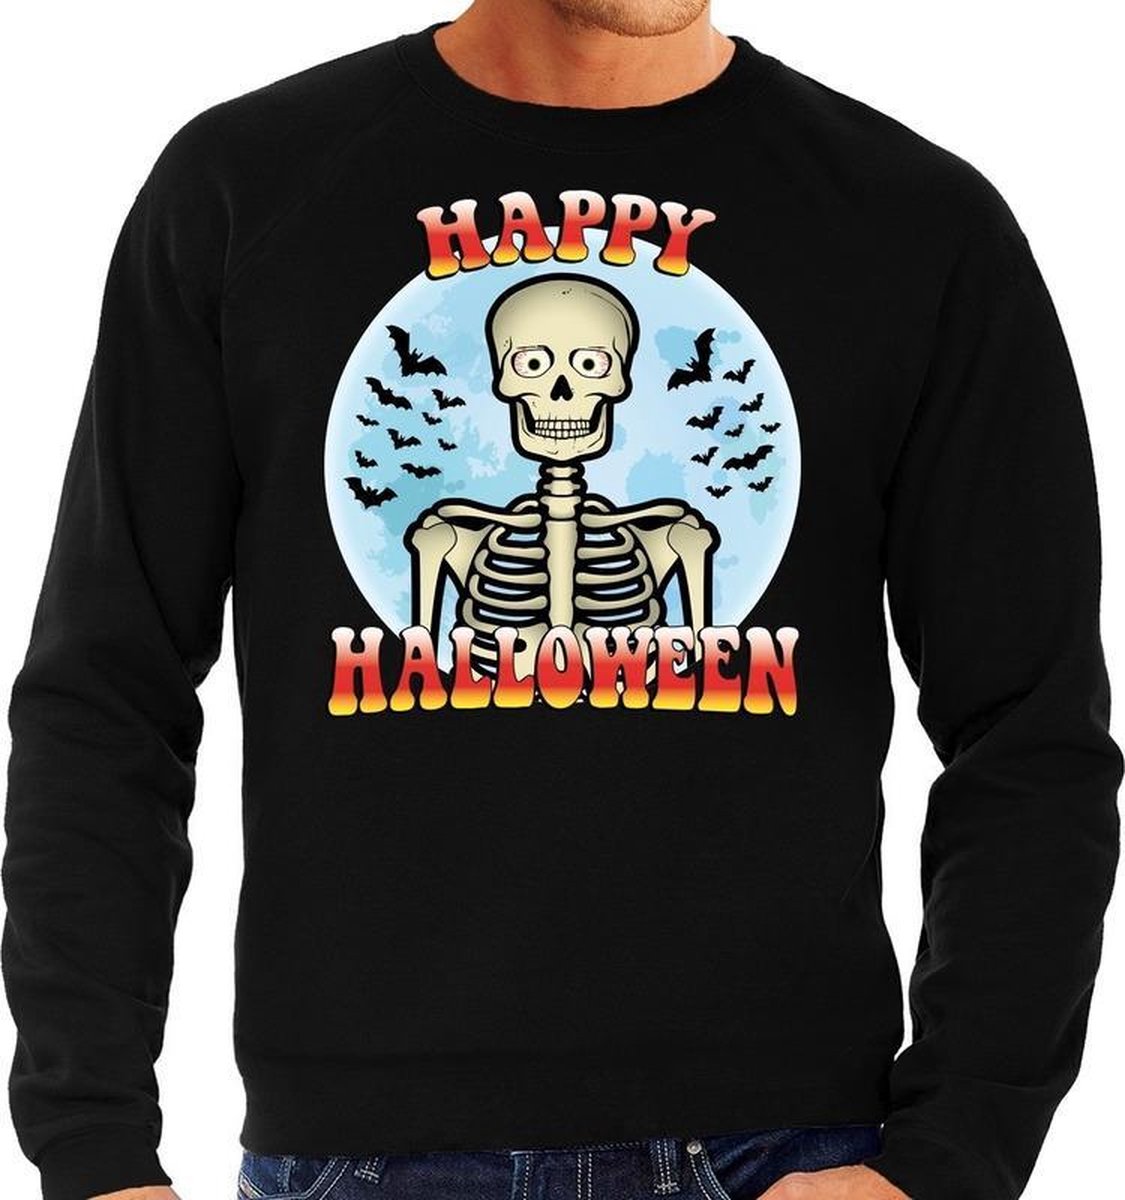 Afbeelding van product Bellatio Decorations  Halloween - Happy Halloween skelet verkleed sweater zwart voor heren - horror skelet trui / kleding / kostuum L  - maat L